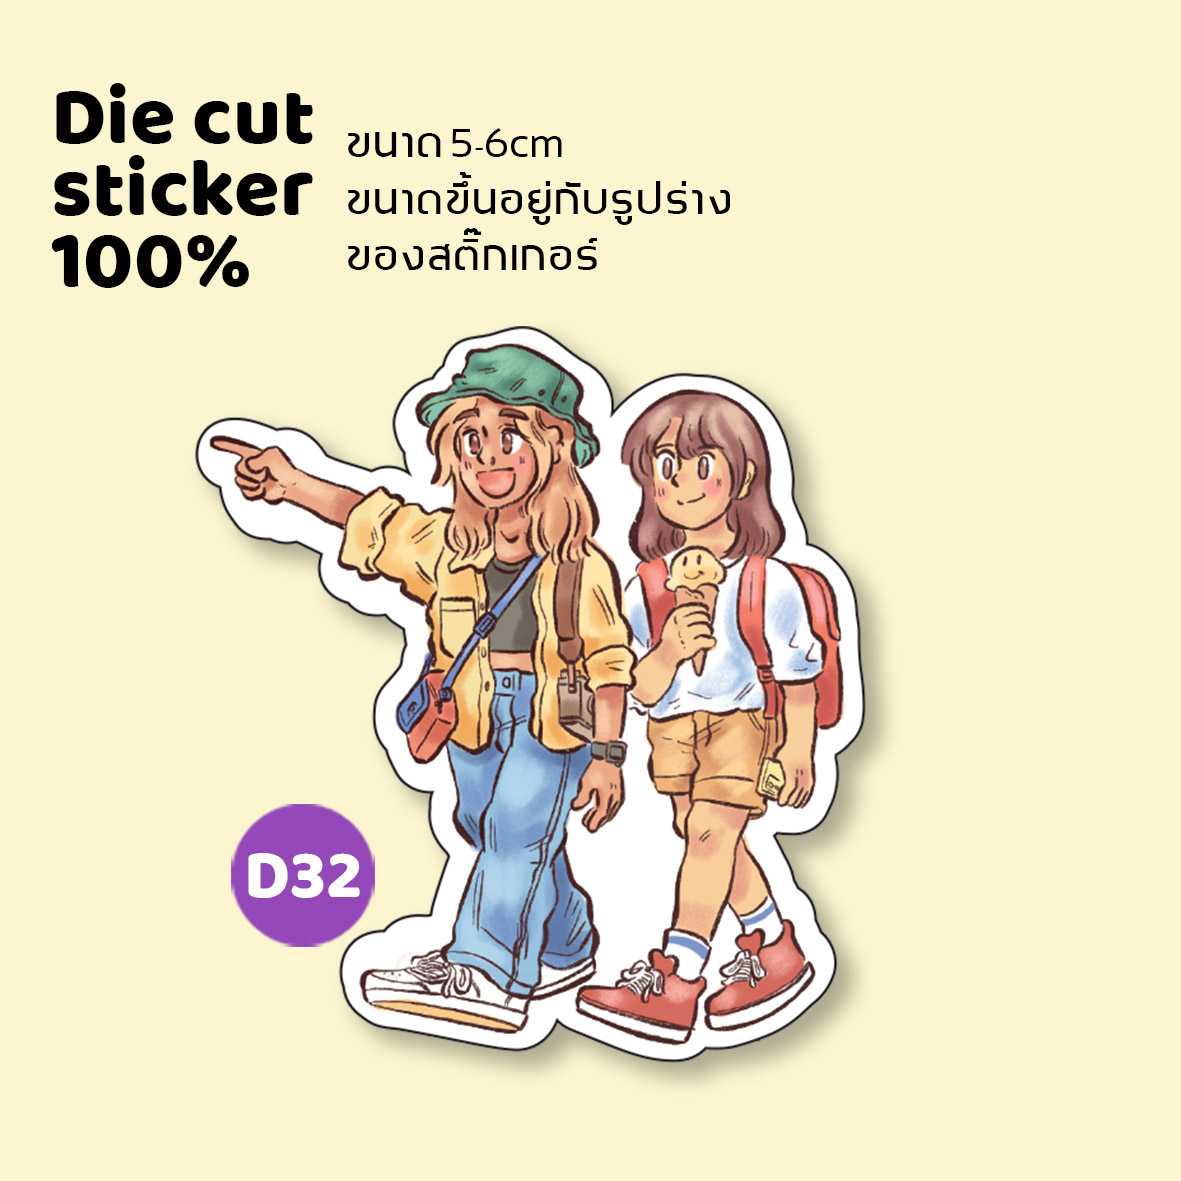 die cut sticker 100% d32